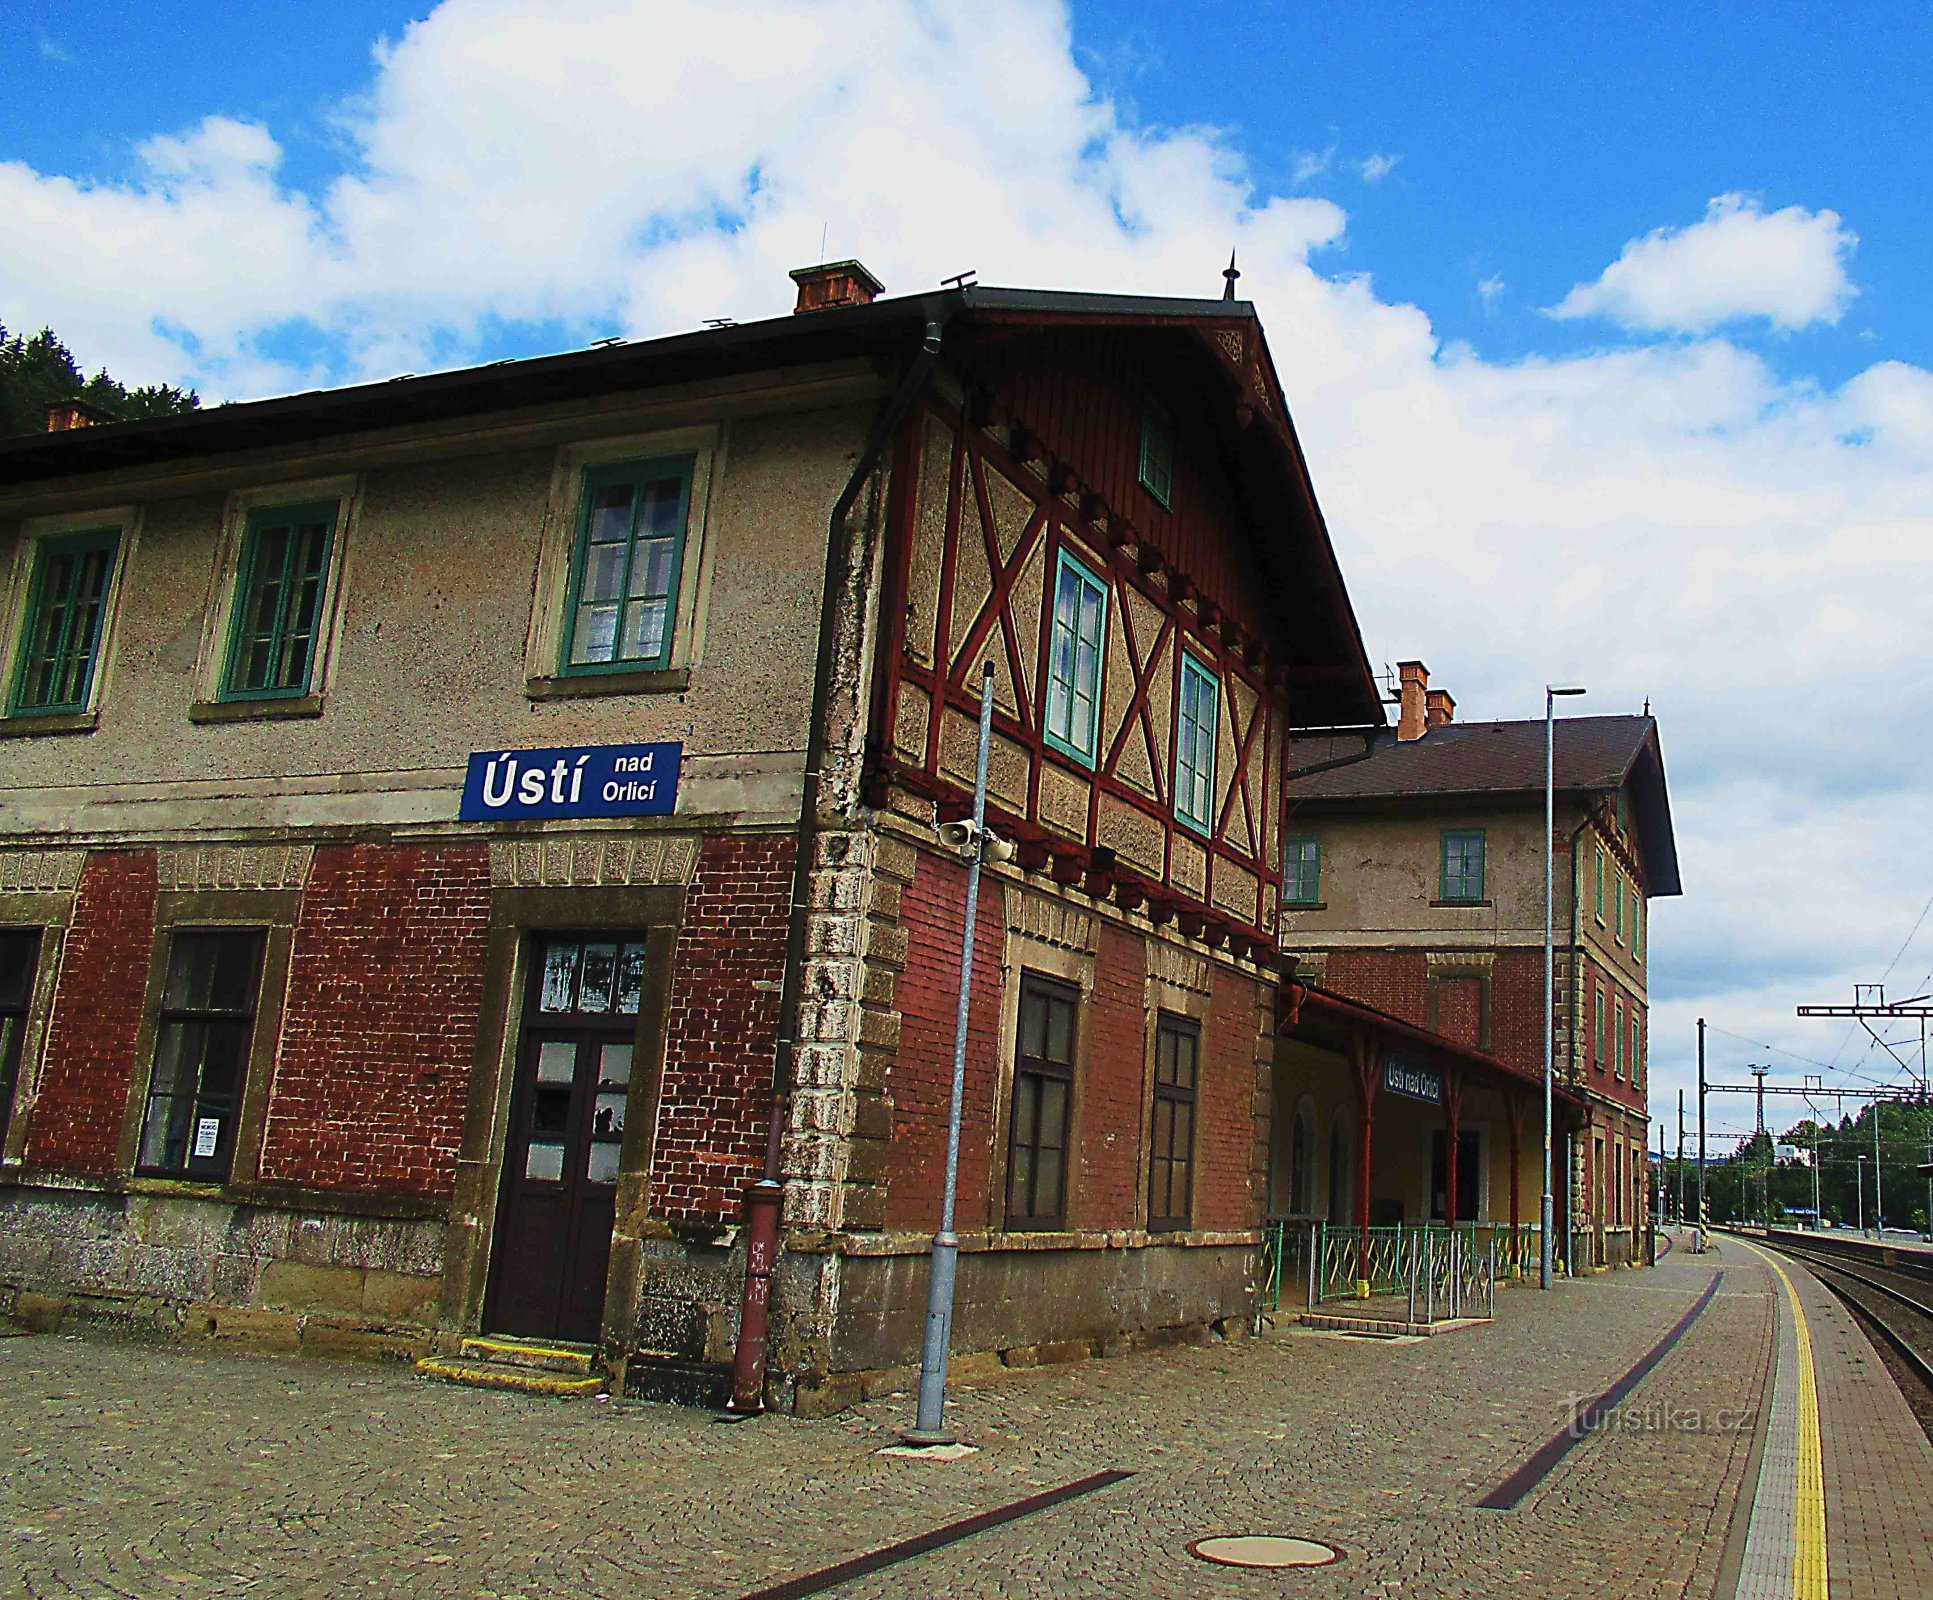 Ústí nad Orlicín rautatieaseman historiallinen rakennus